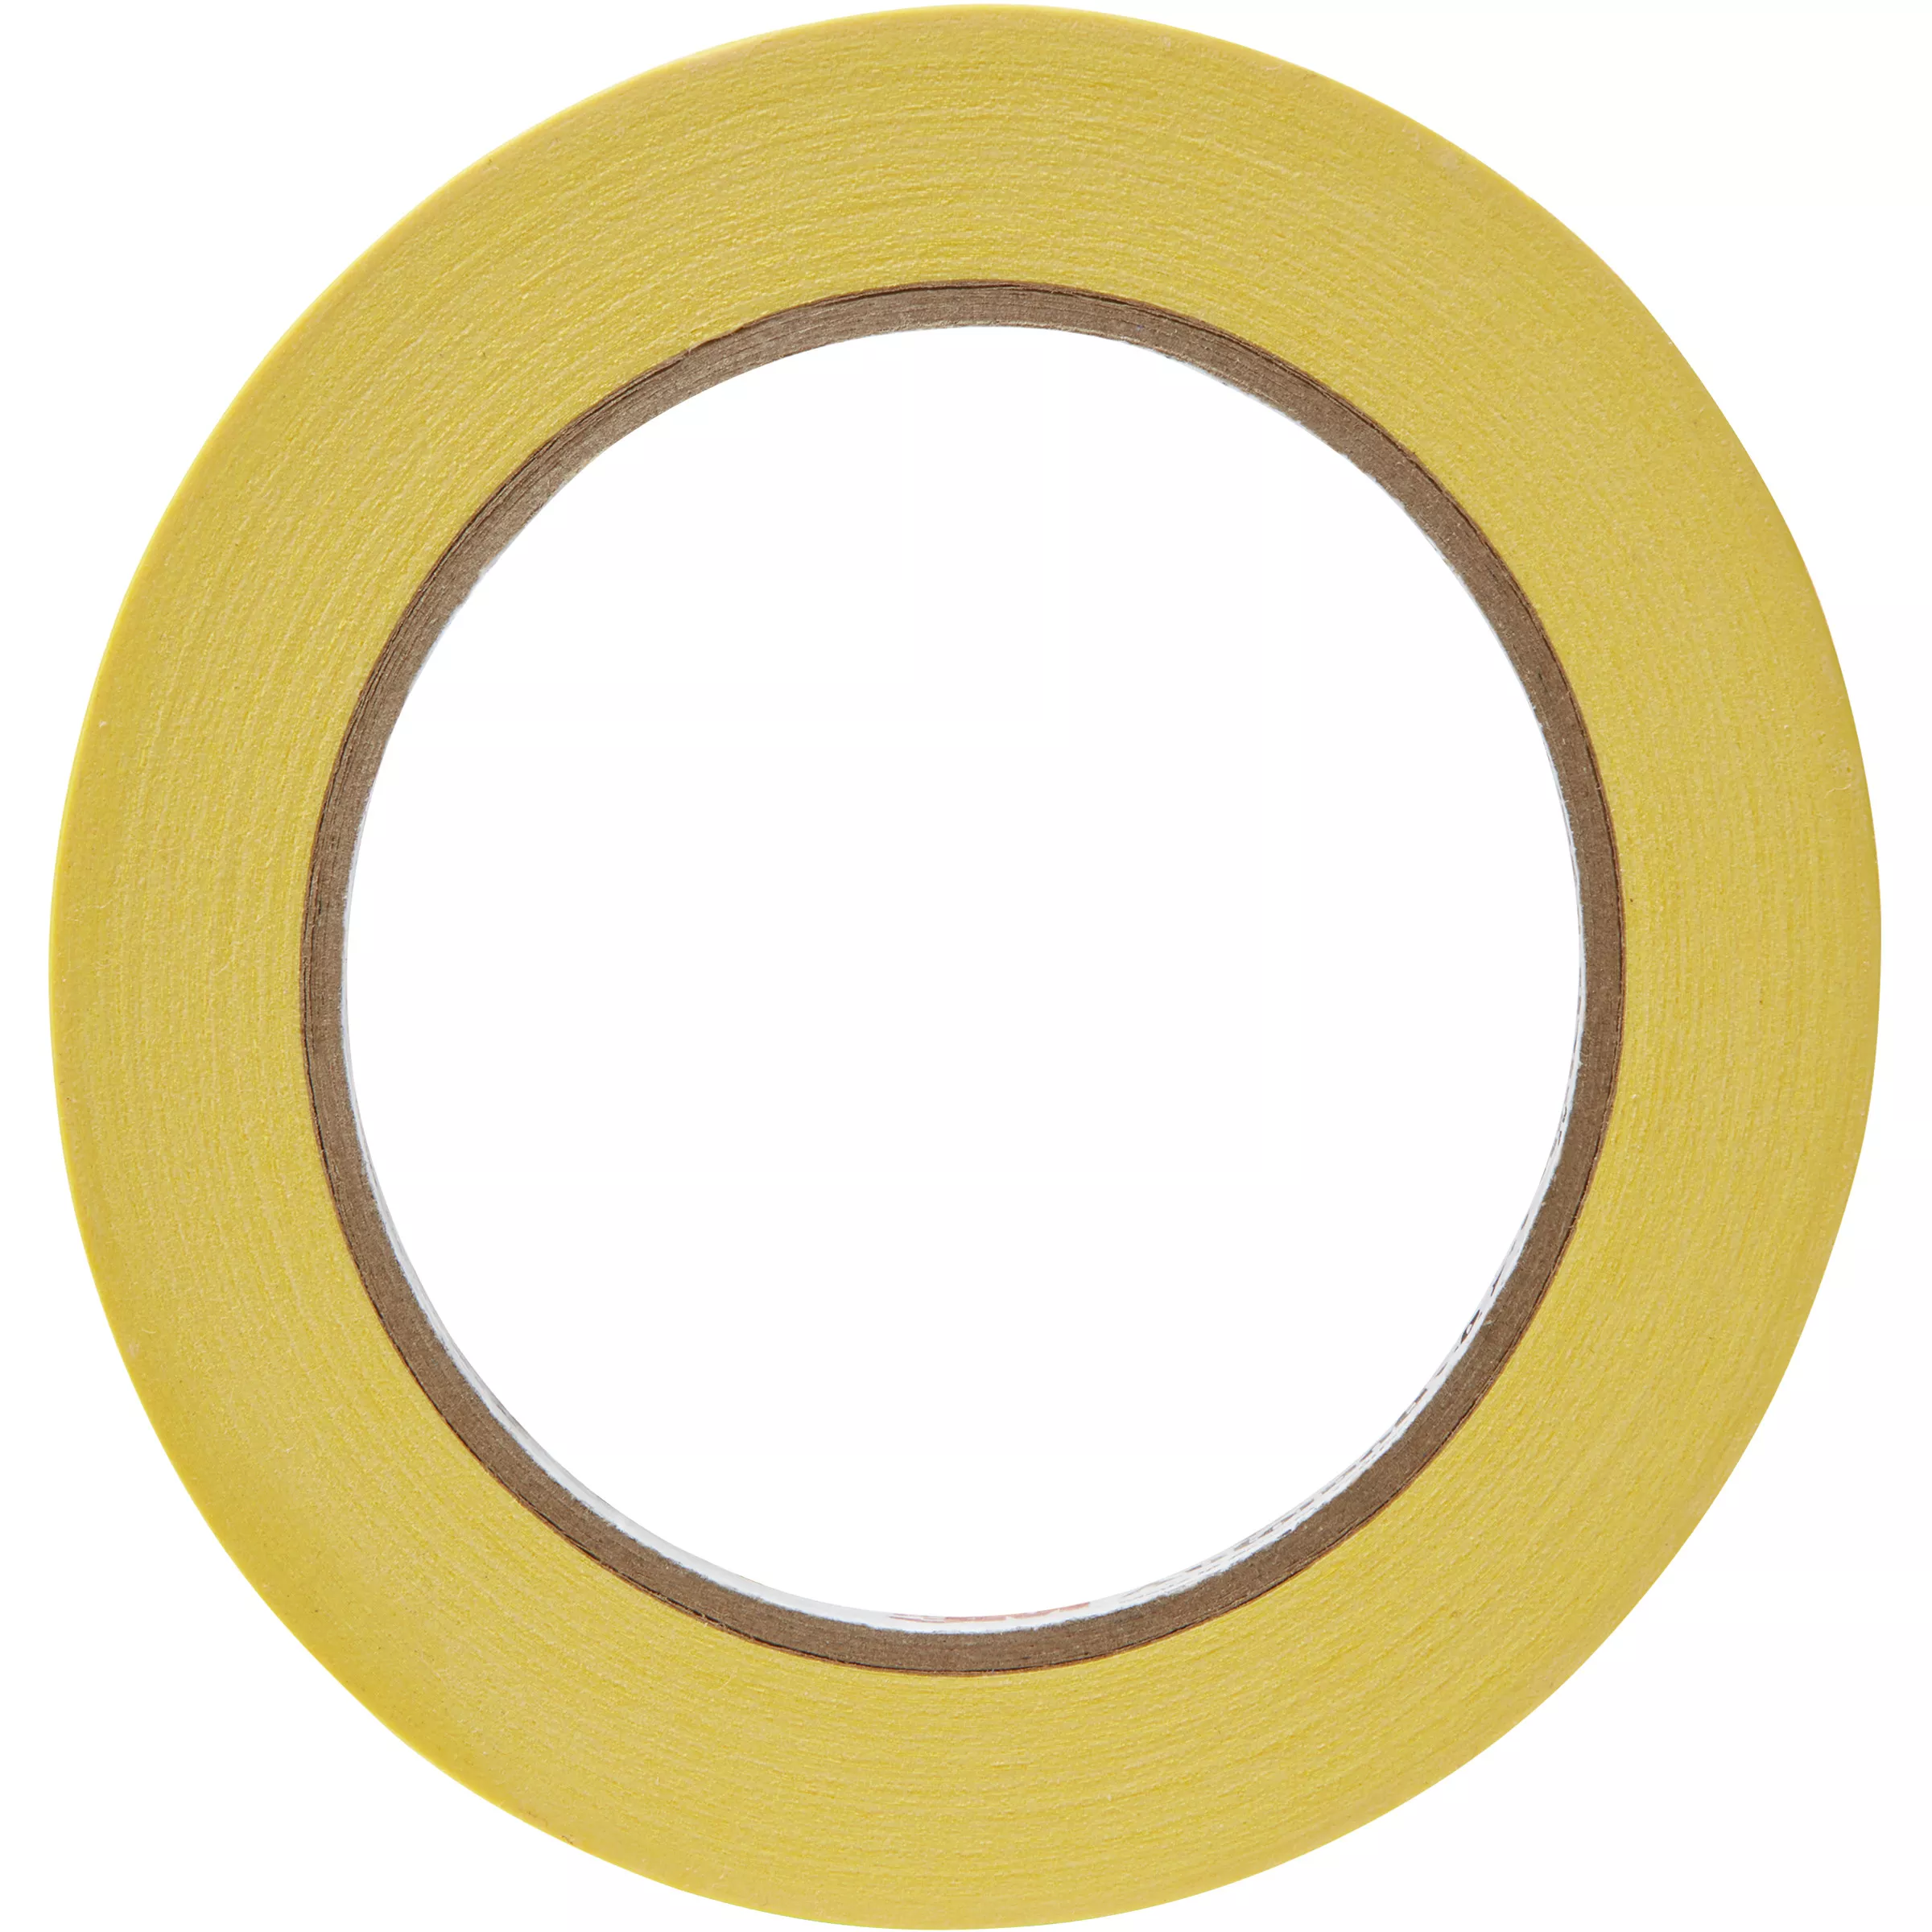 Product Number 03423 | 3M™ Automotive Refinish Masking Tape